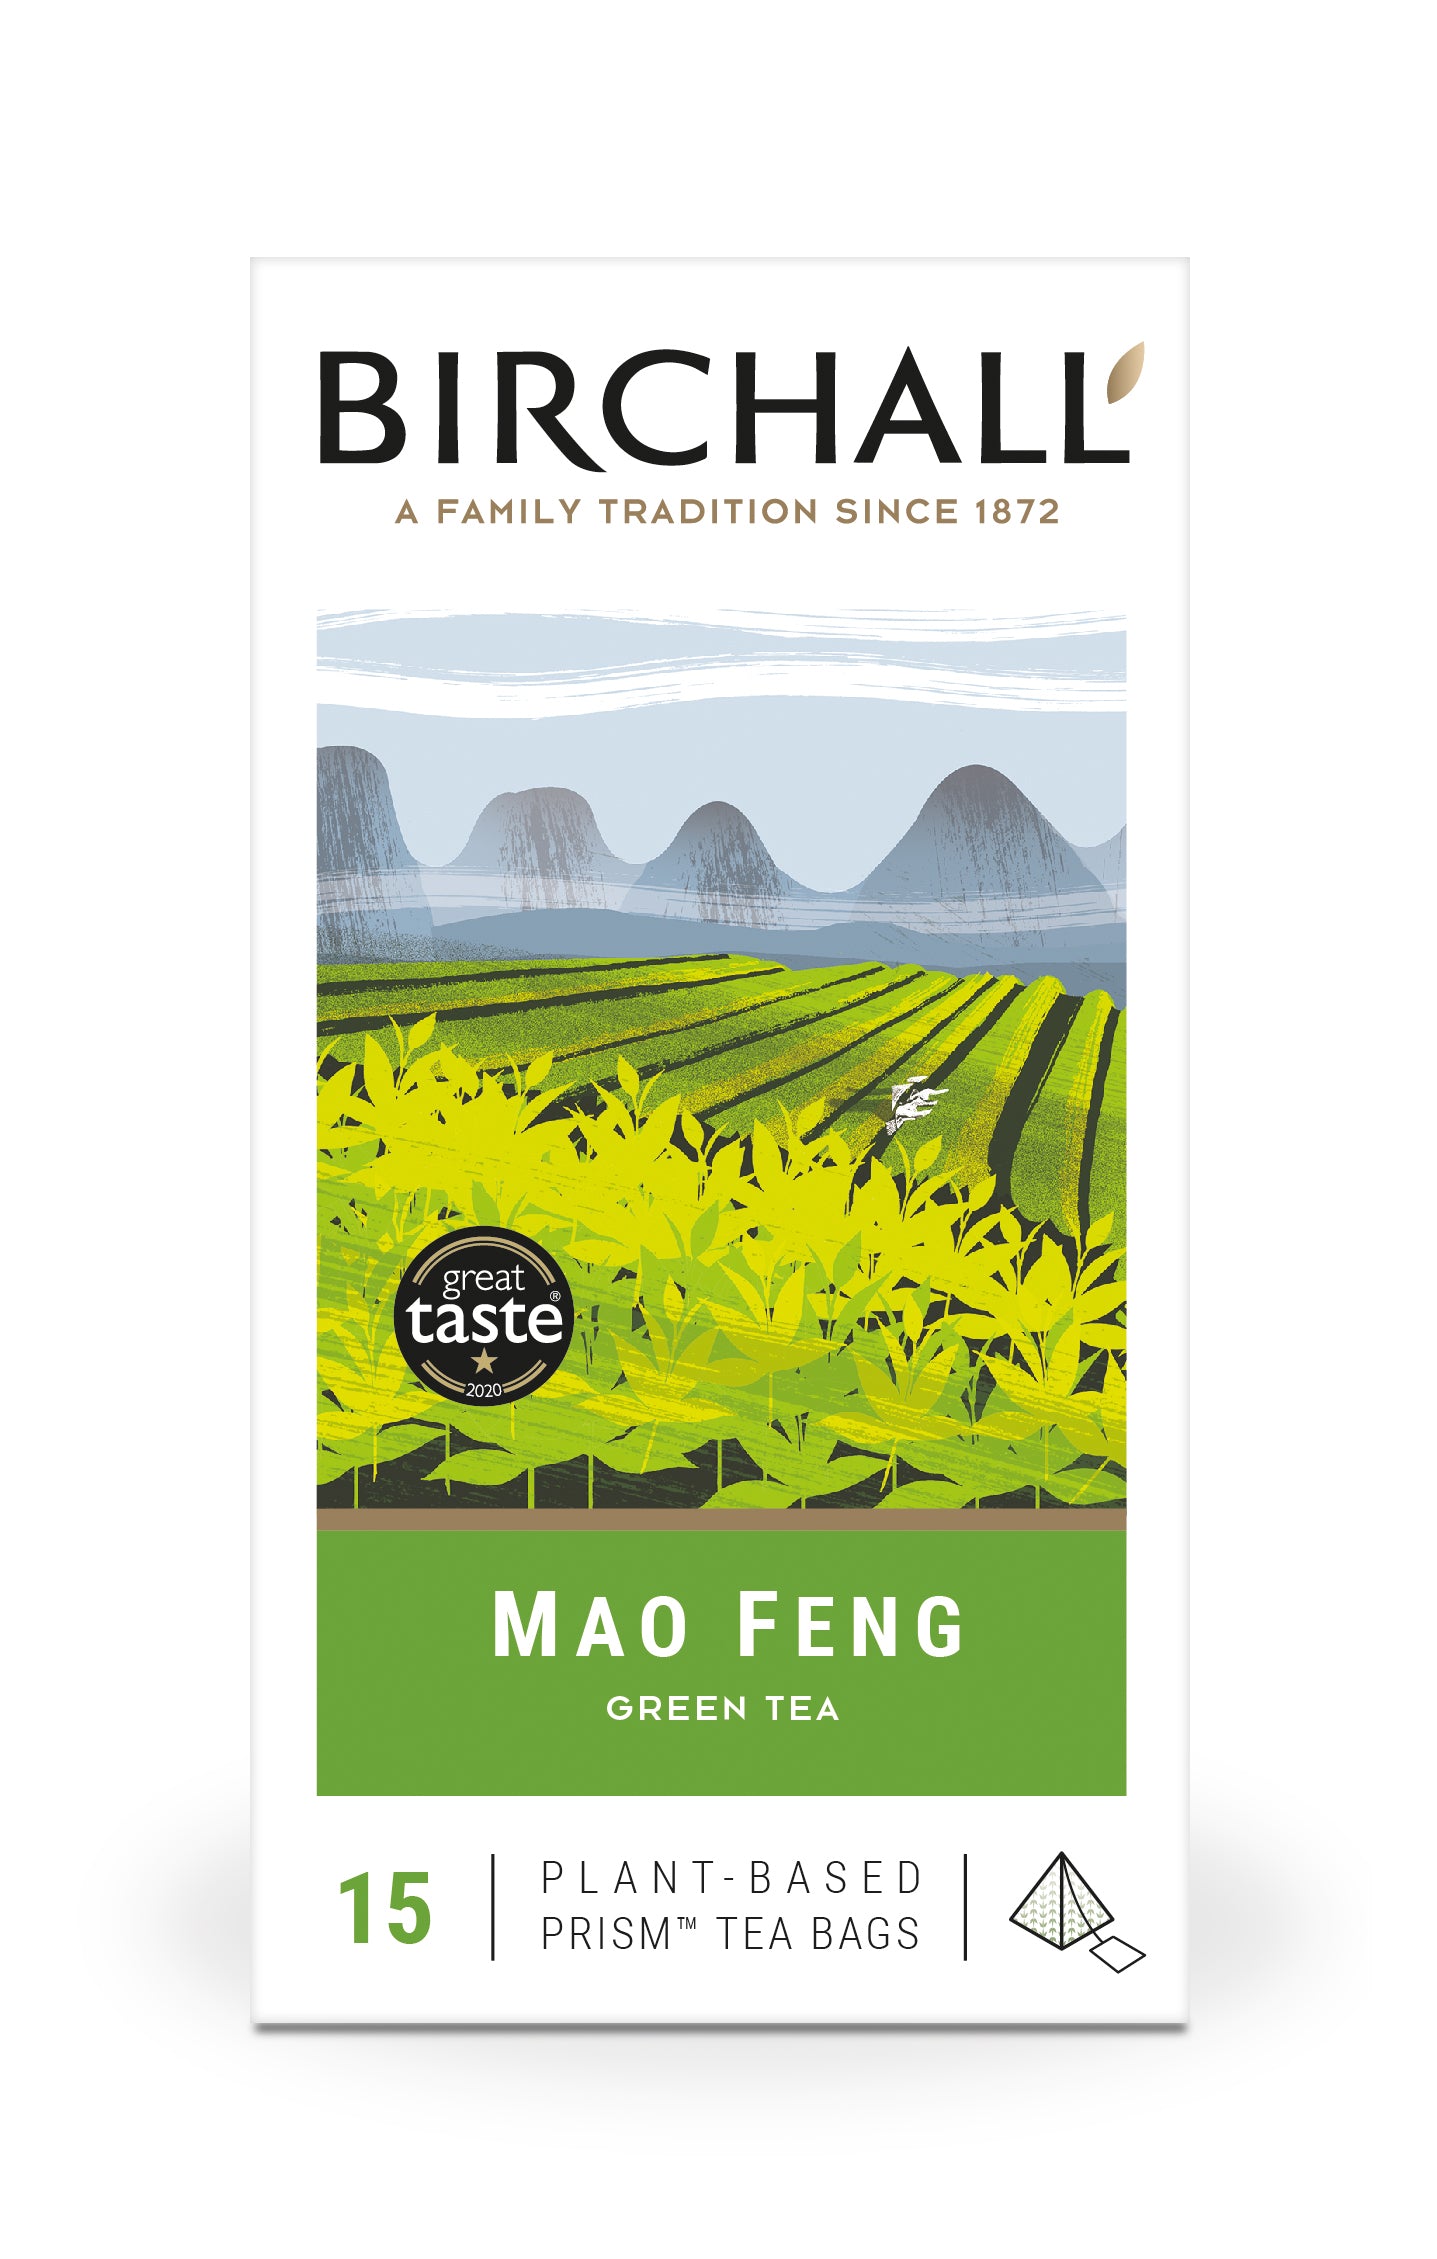 Birchall Mao Feng Green Tea - 15 Plant-Based Prism Tea Bags